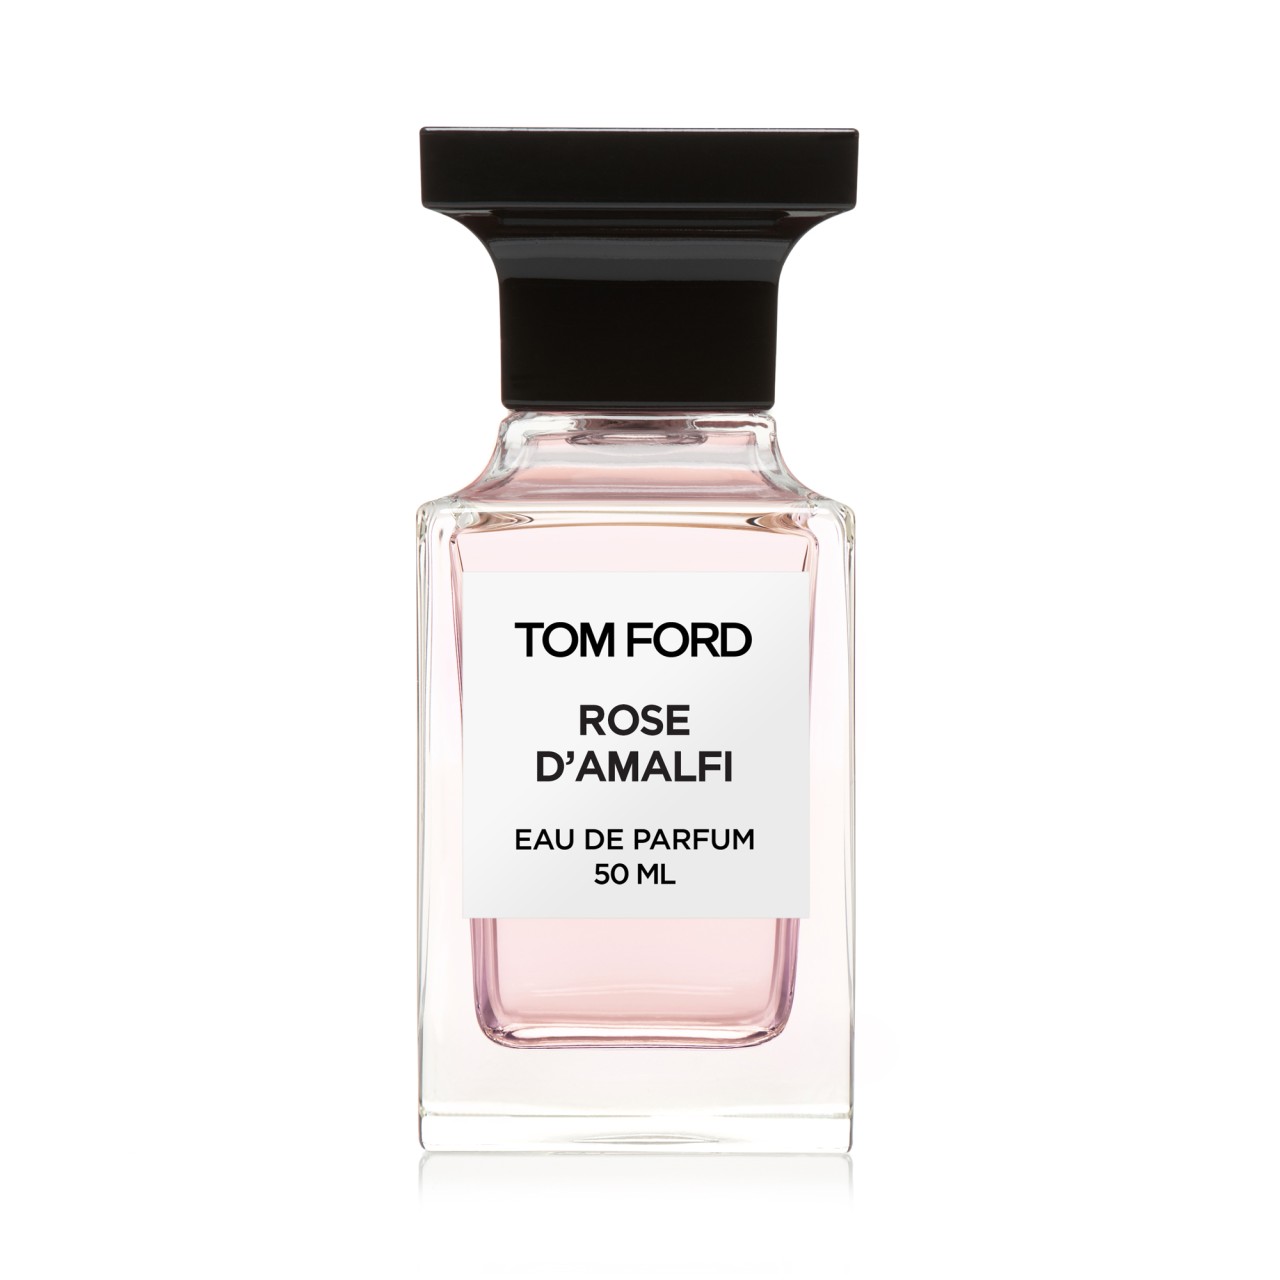 Tom Ford Rose D'Amalfi